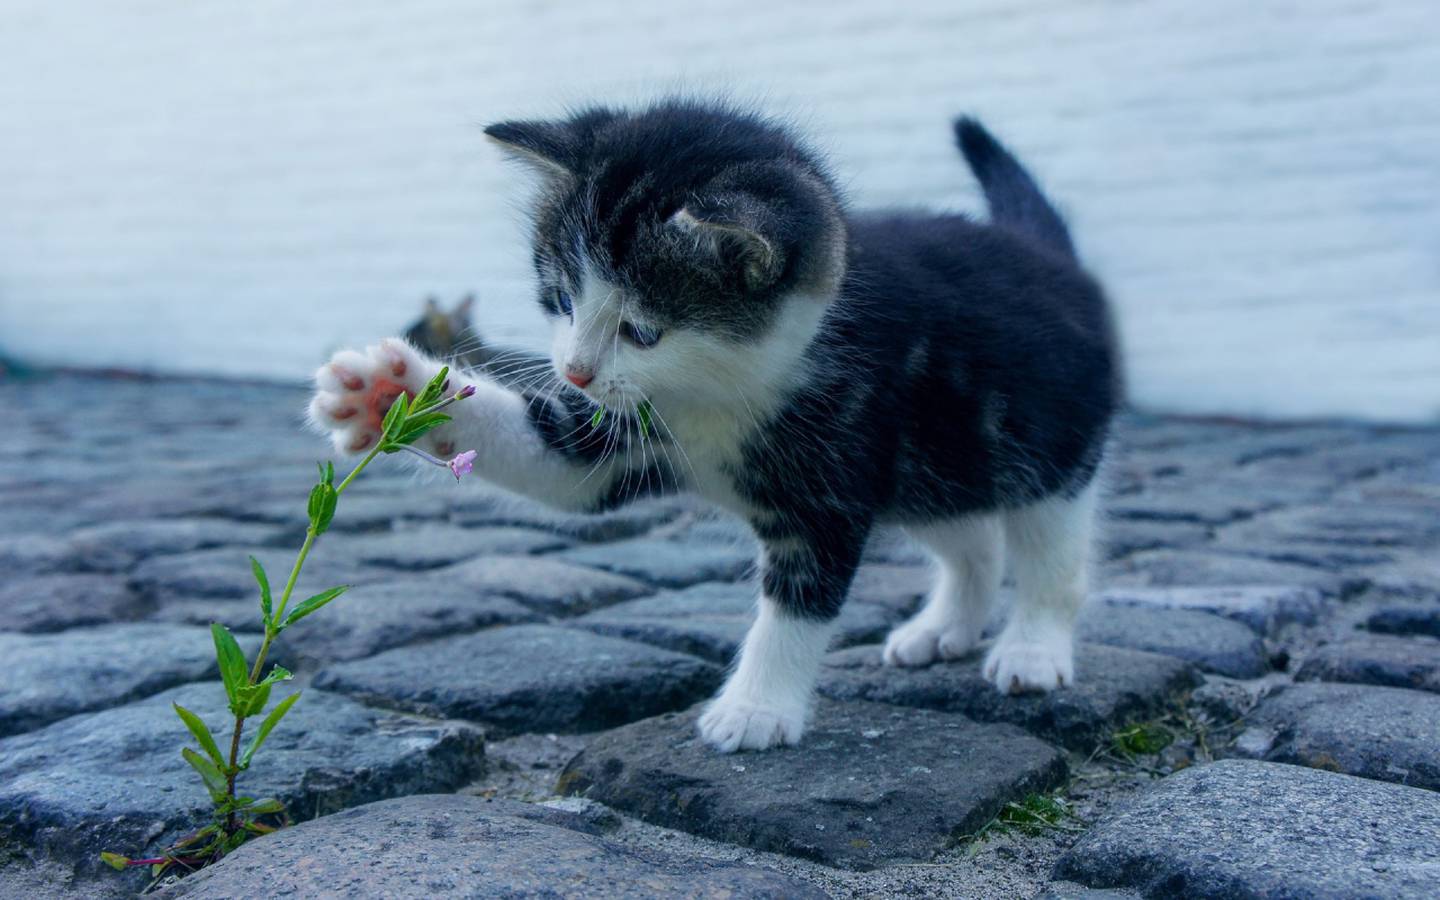 Gatito bebé jugando con una flor